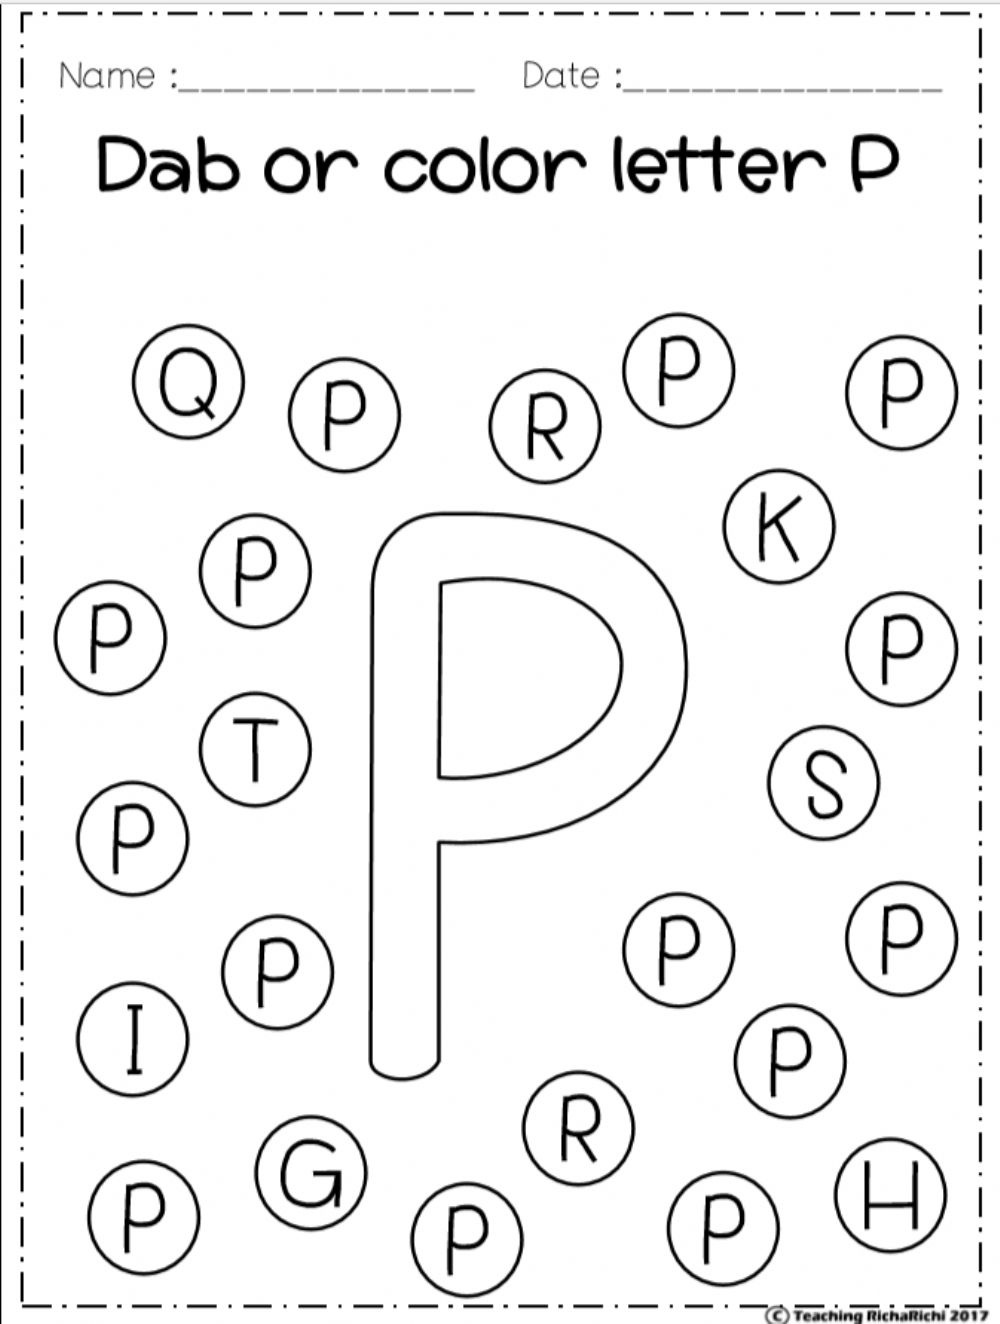 Letter Pp: The Alphabet Worksheet regarding Alphabet Dab Worksheets